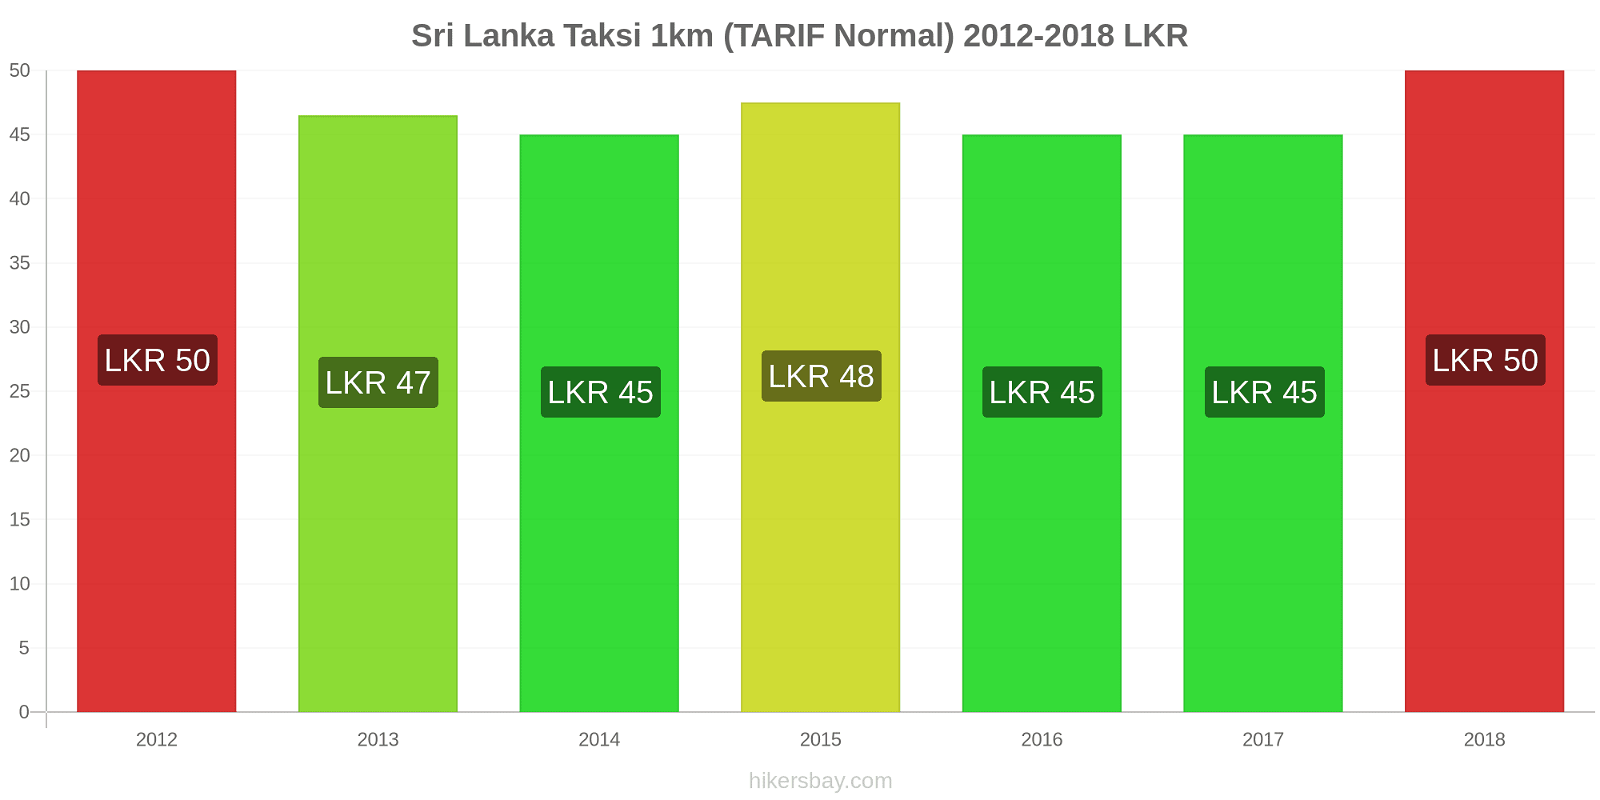 Sri Lanka perubahan harga Taksi 1km (Tarif Normal) hikersbay.com